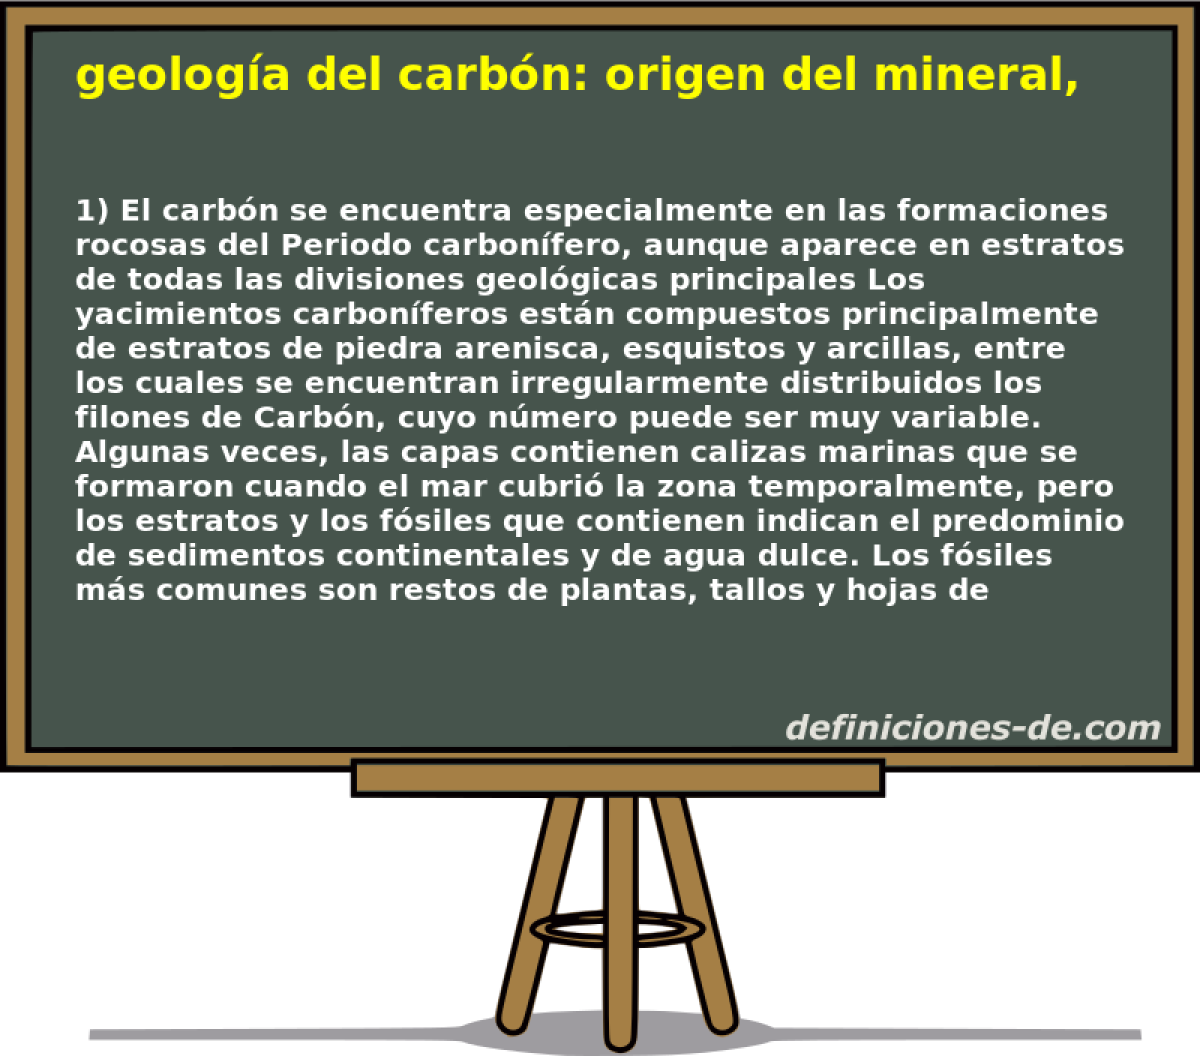 geologa del carbn: origen del mineral, formacin 